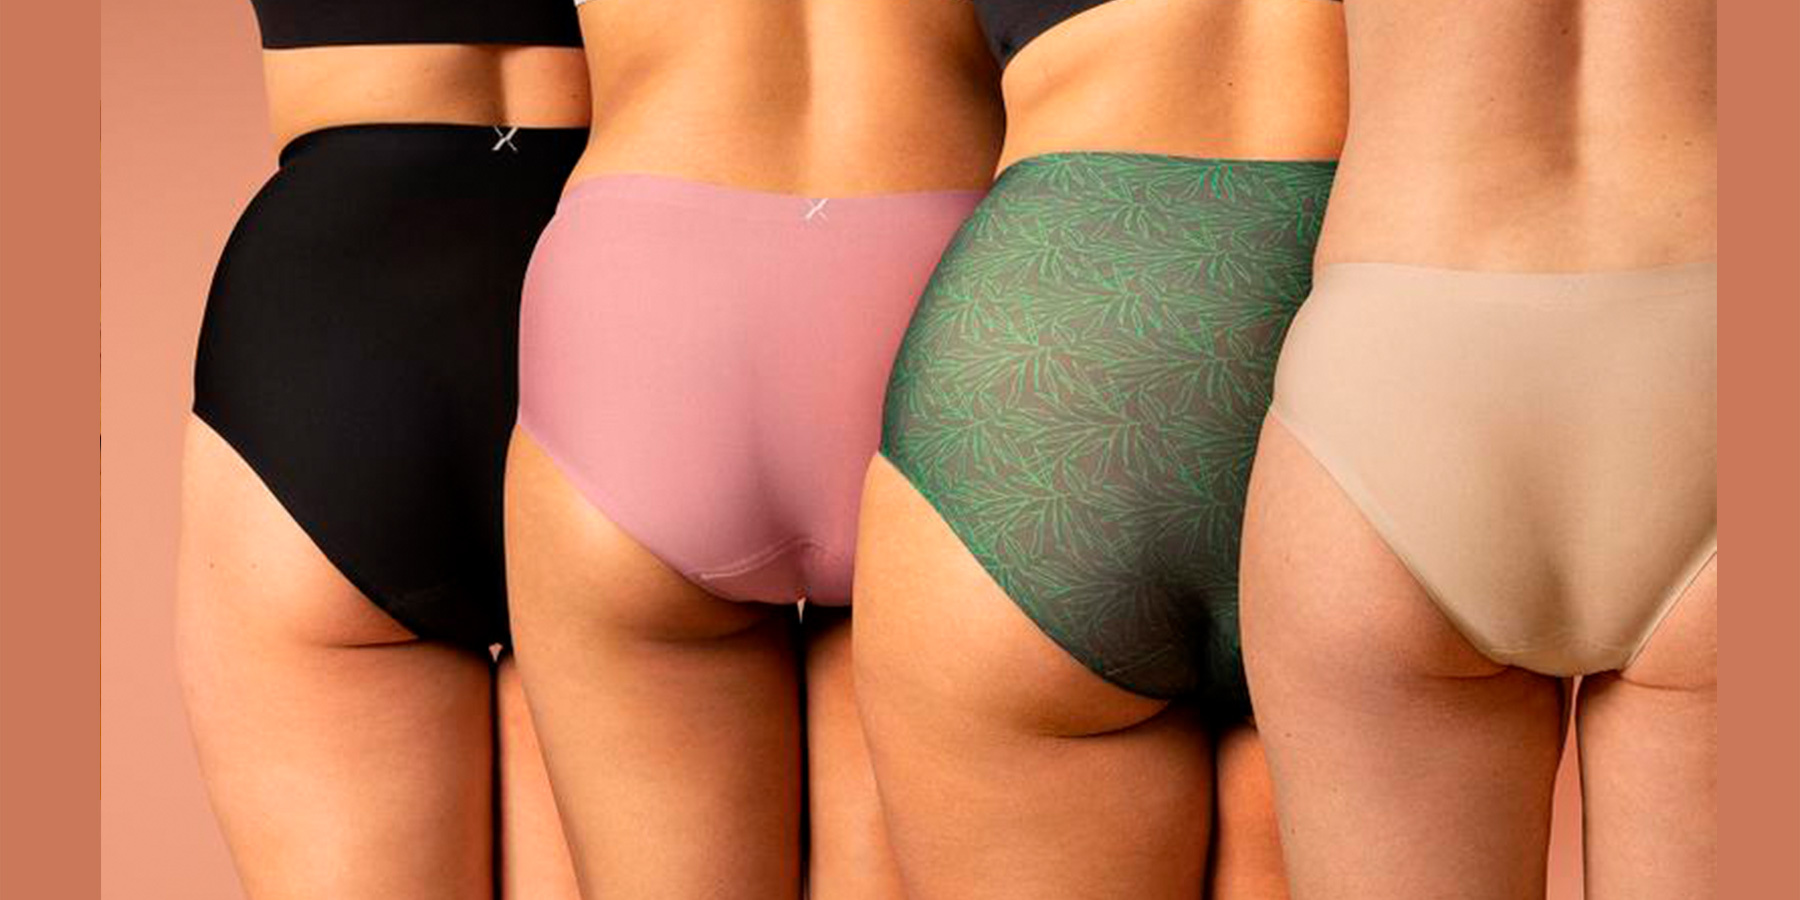 Best Period Underwear: Period-Proof Underwear to ShopHelloGiggles